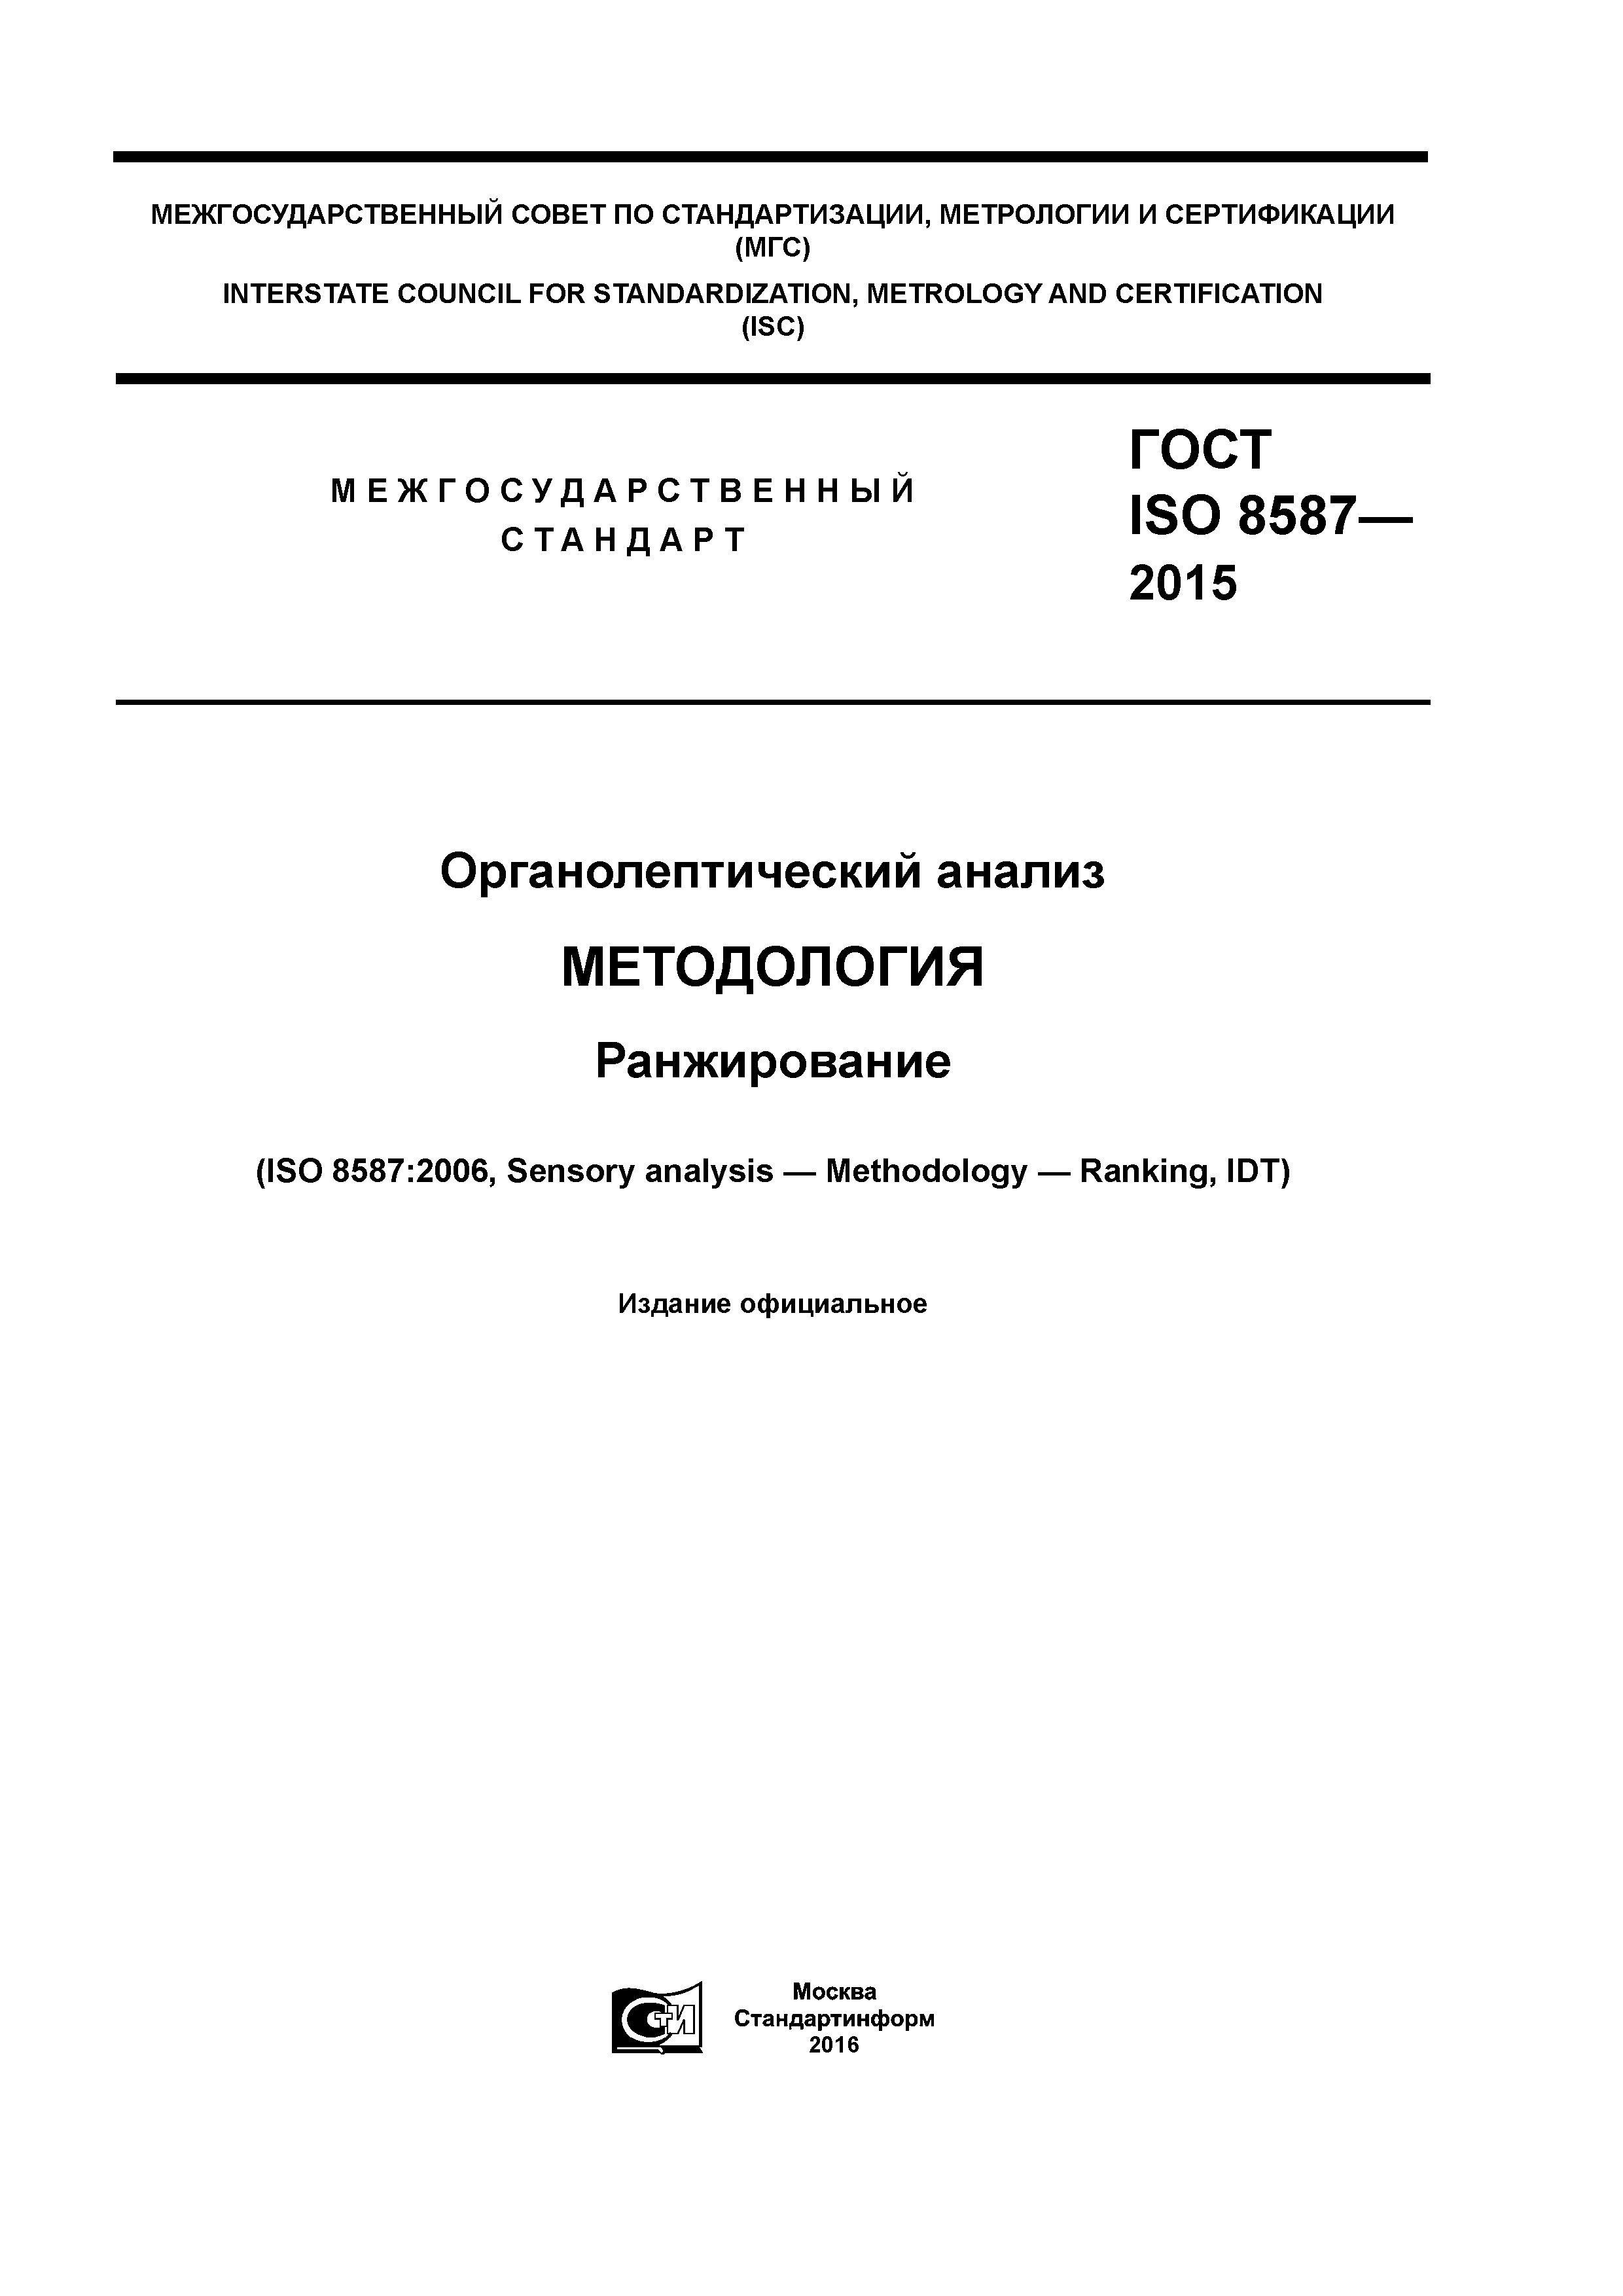 ГОСТ ISO 8587-2015